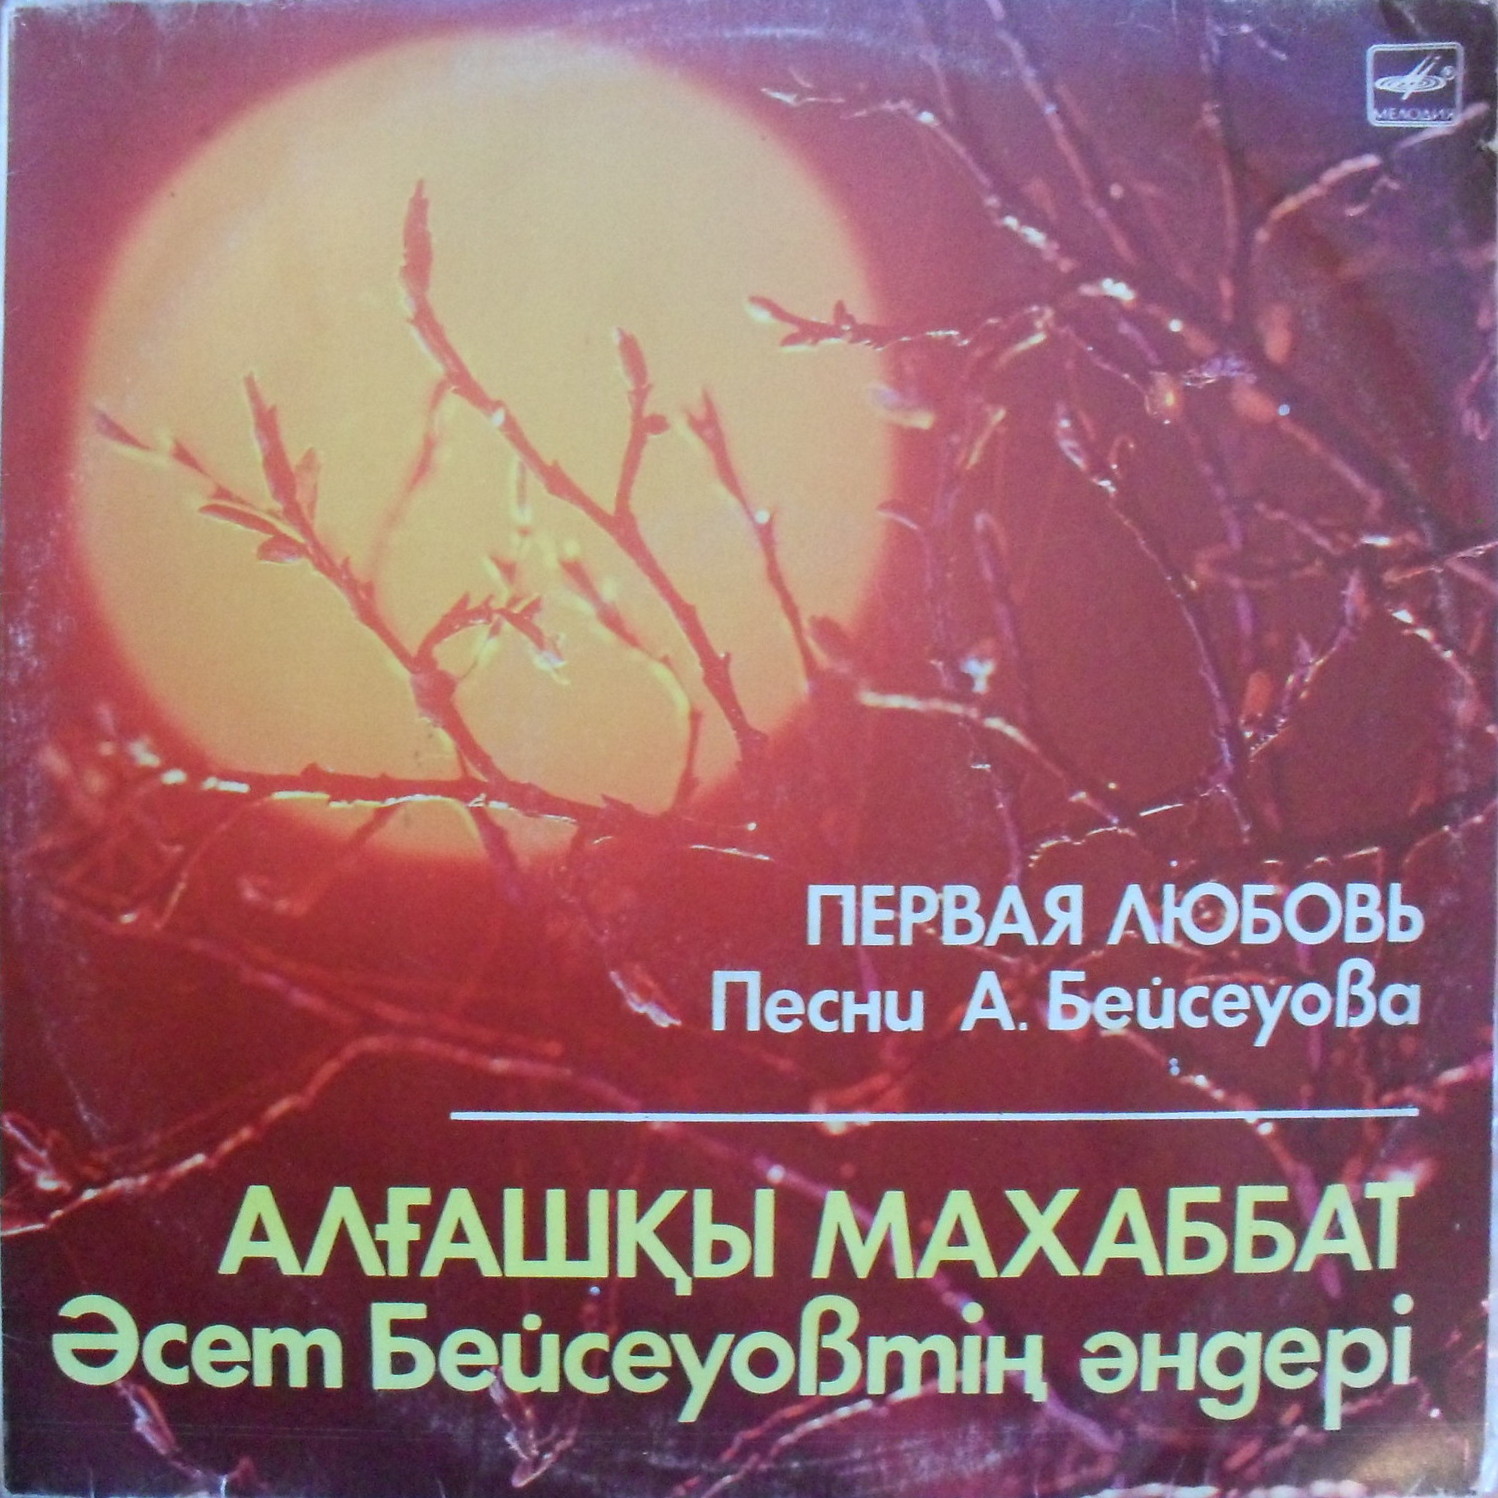 А. БЕЙСЕУОВ (1938): «Первая любовь», песни.